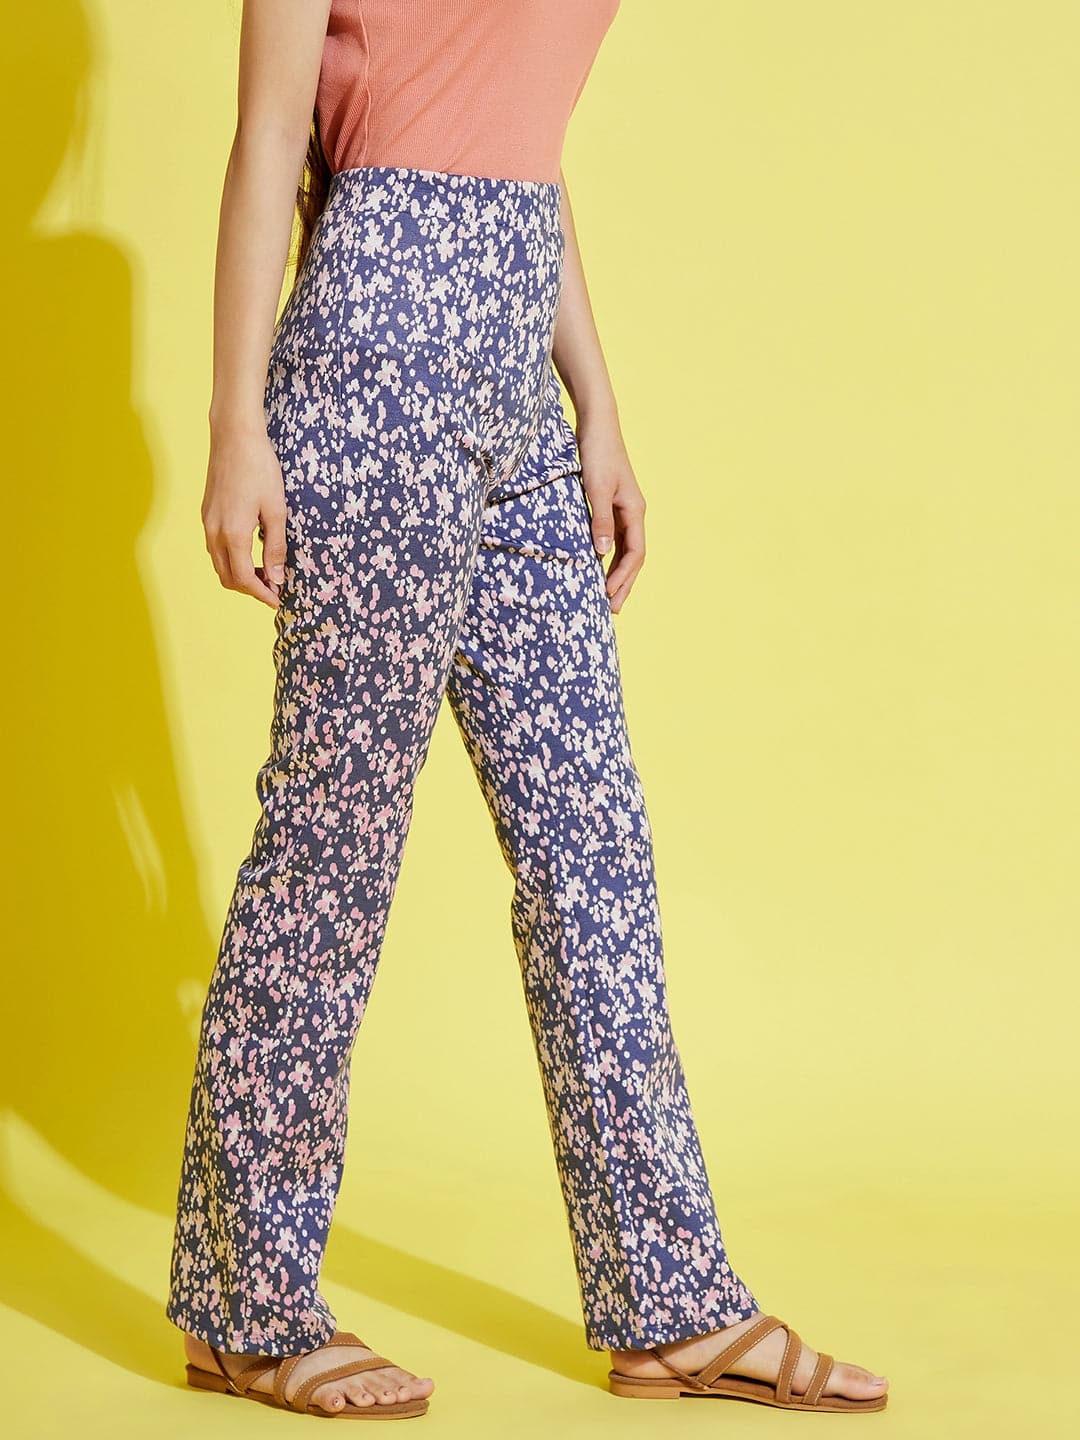 VOSS Floral Trousers Print Cotton Pants Women Tightness Casual Linen Size  Plus Plus Size Pants - Walmart.com